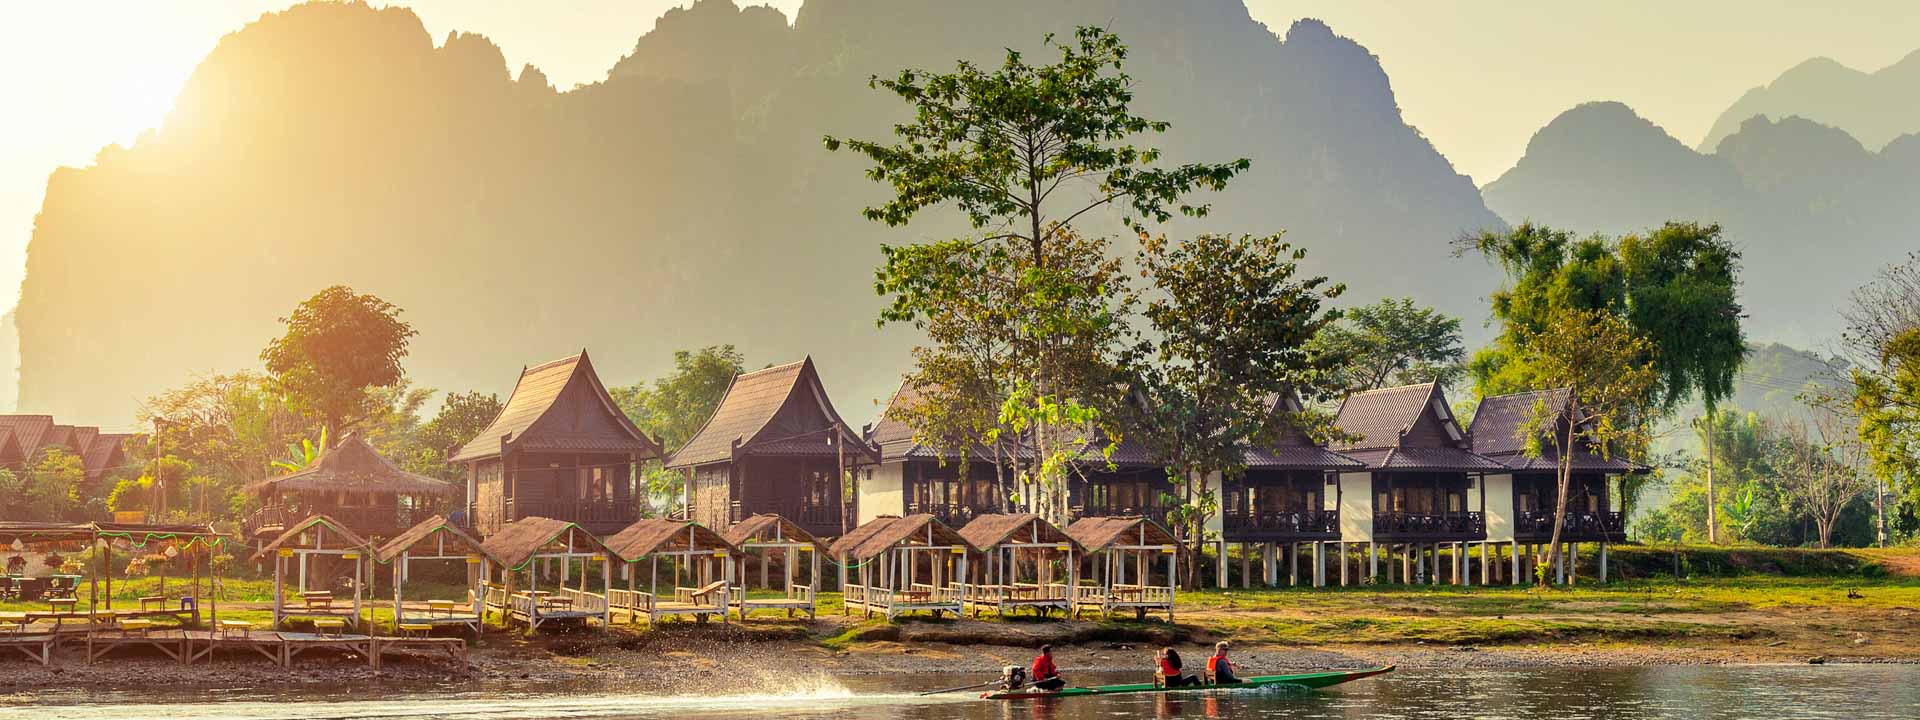 Descubriendo el Sur exótico de Laos 4 días